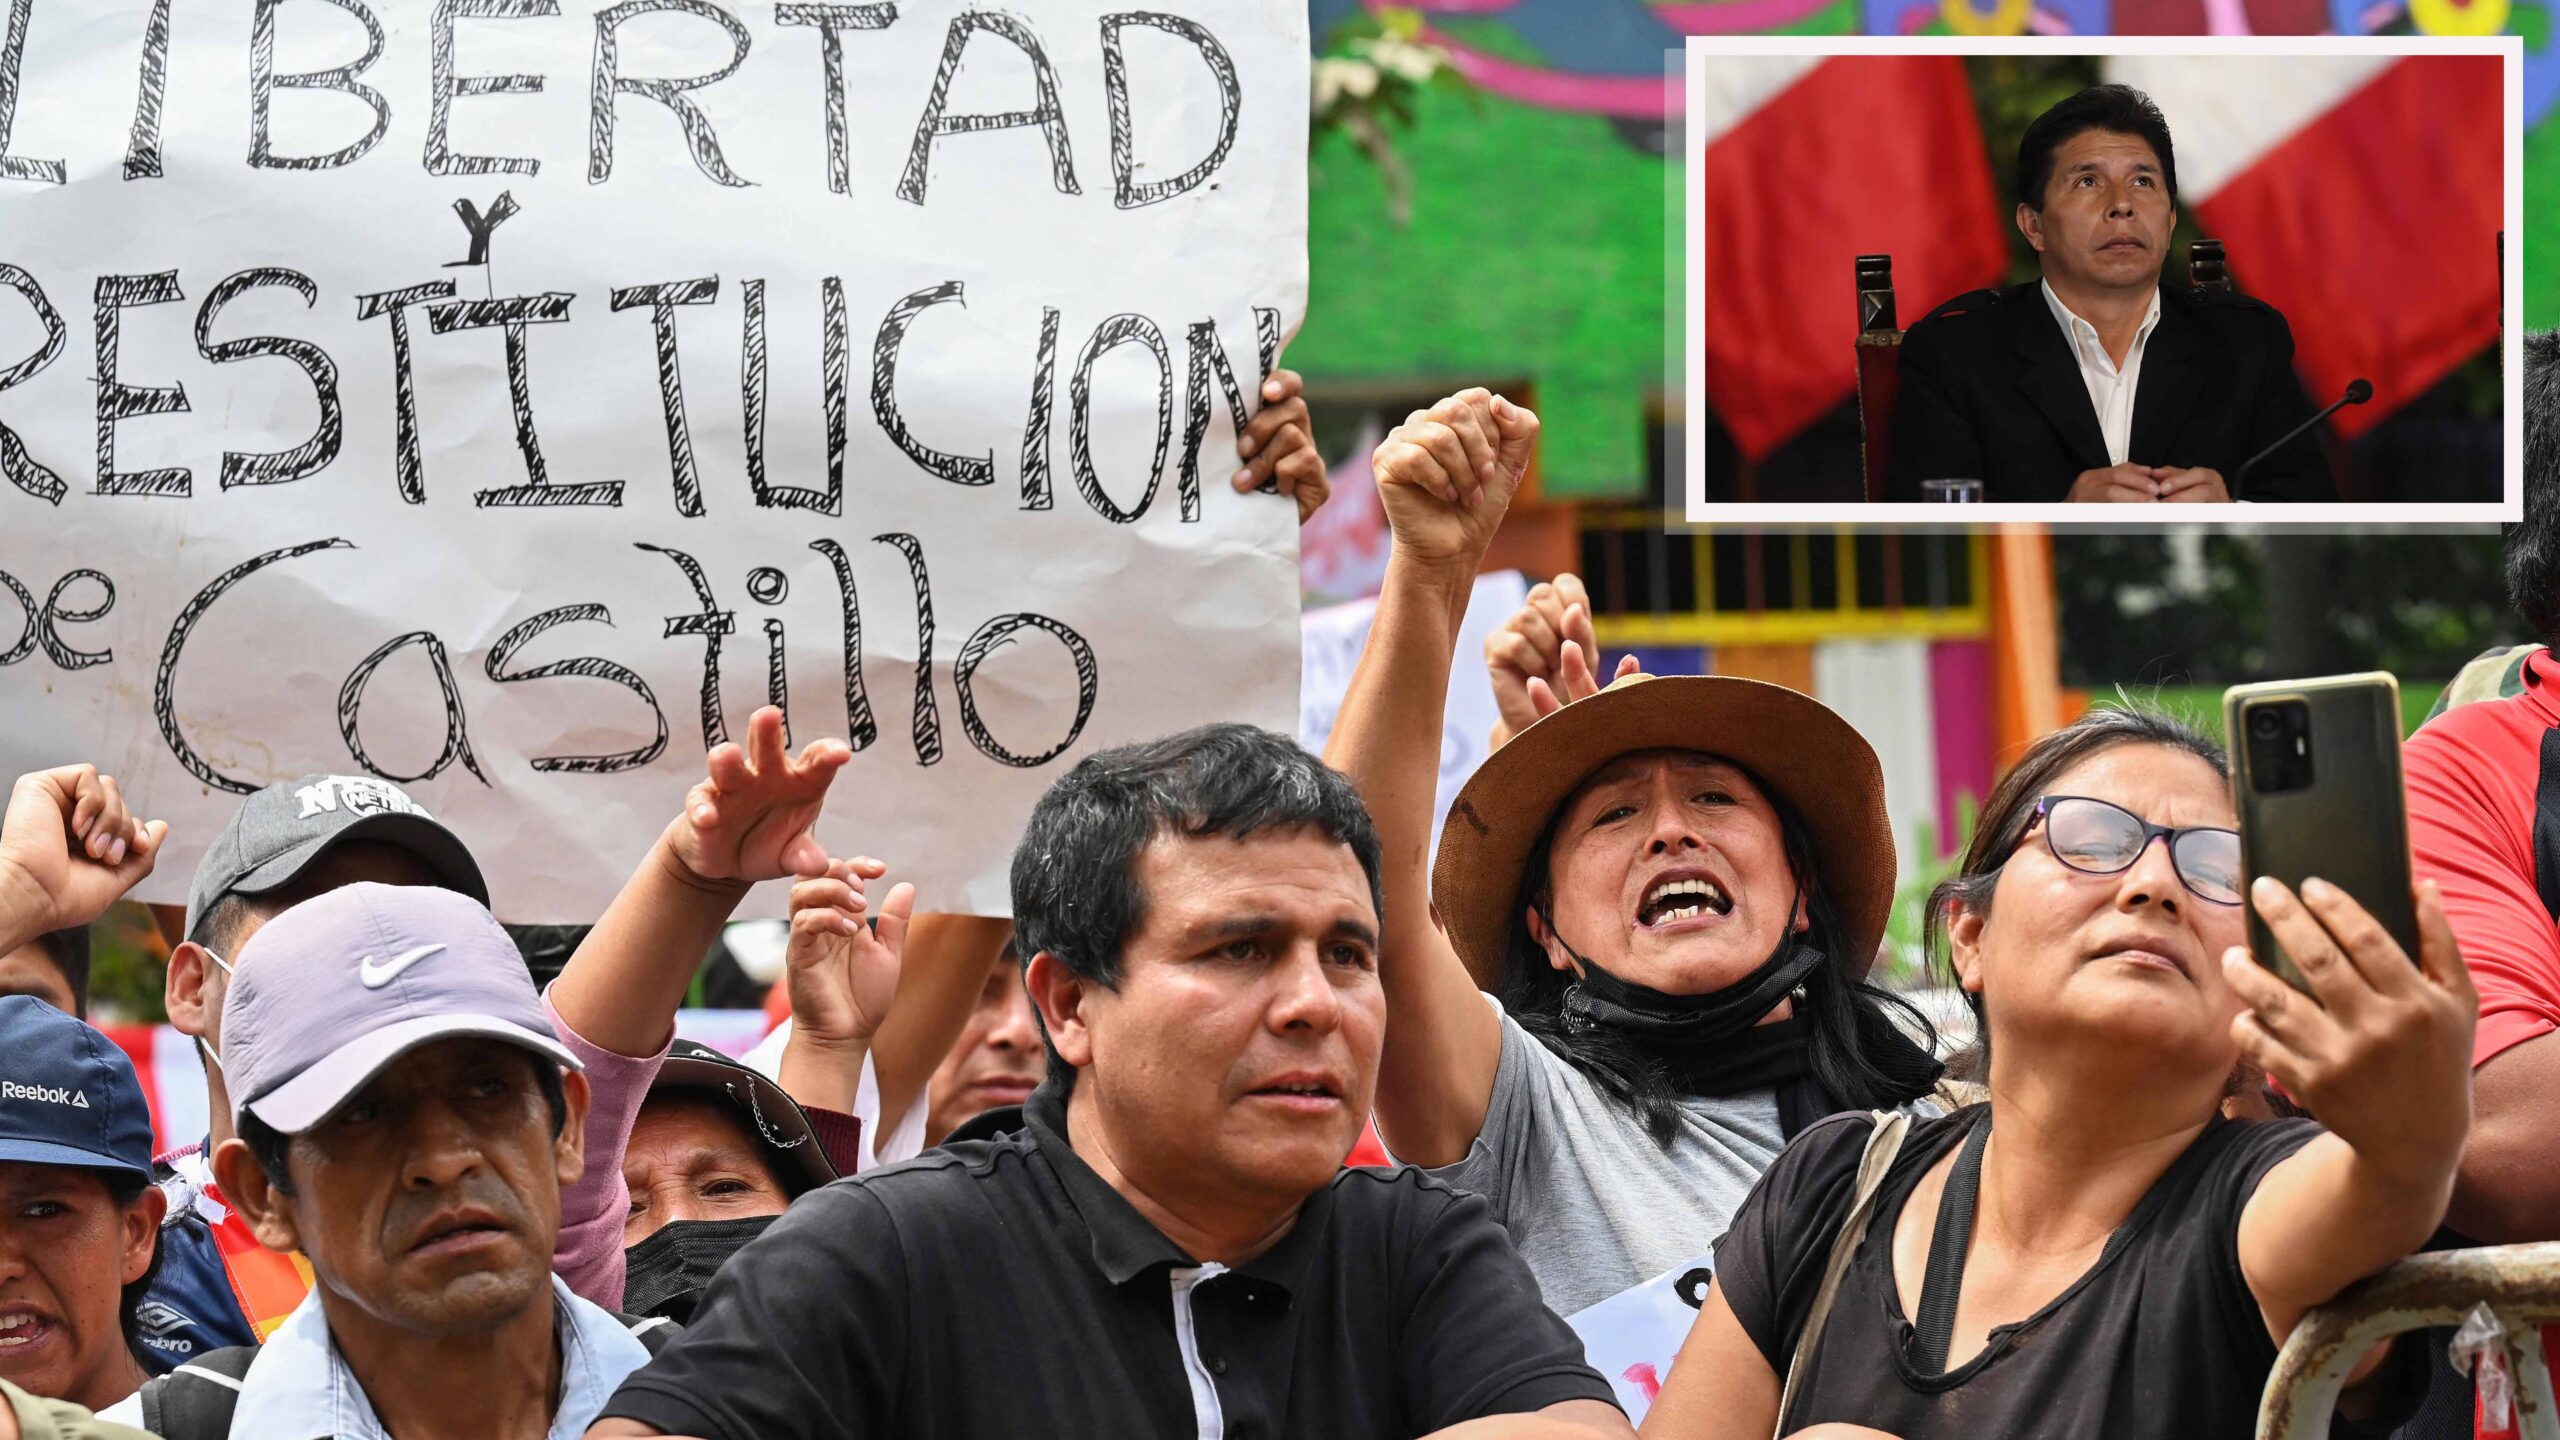 Perú: Castillo dice estar “injustamente detenido” y culpa a Boluarte por la represión